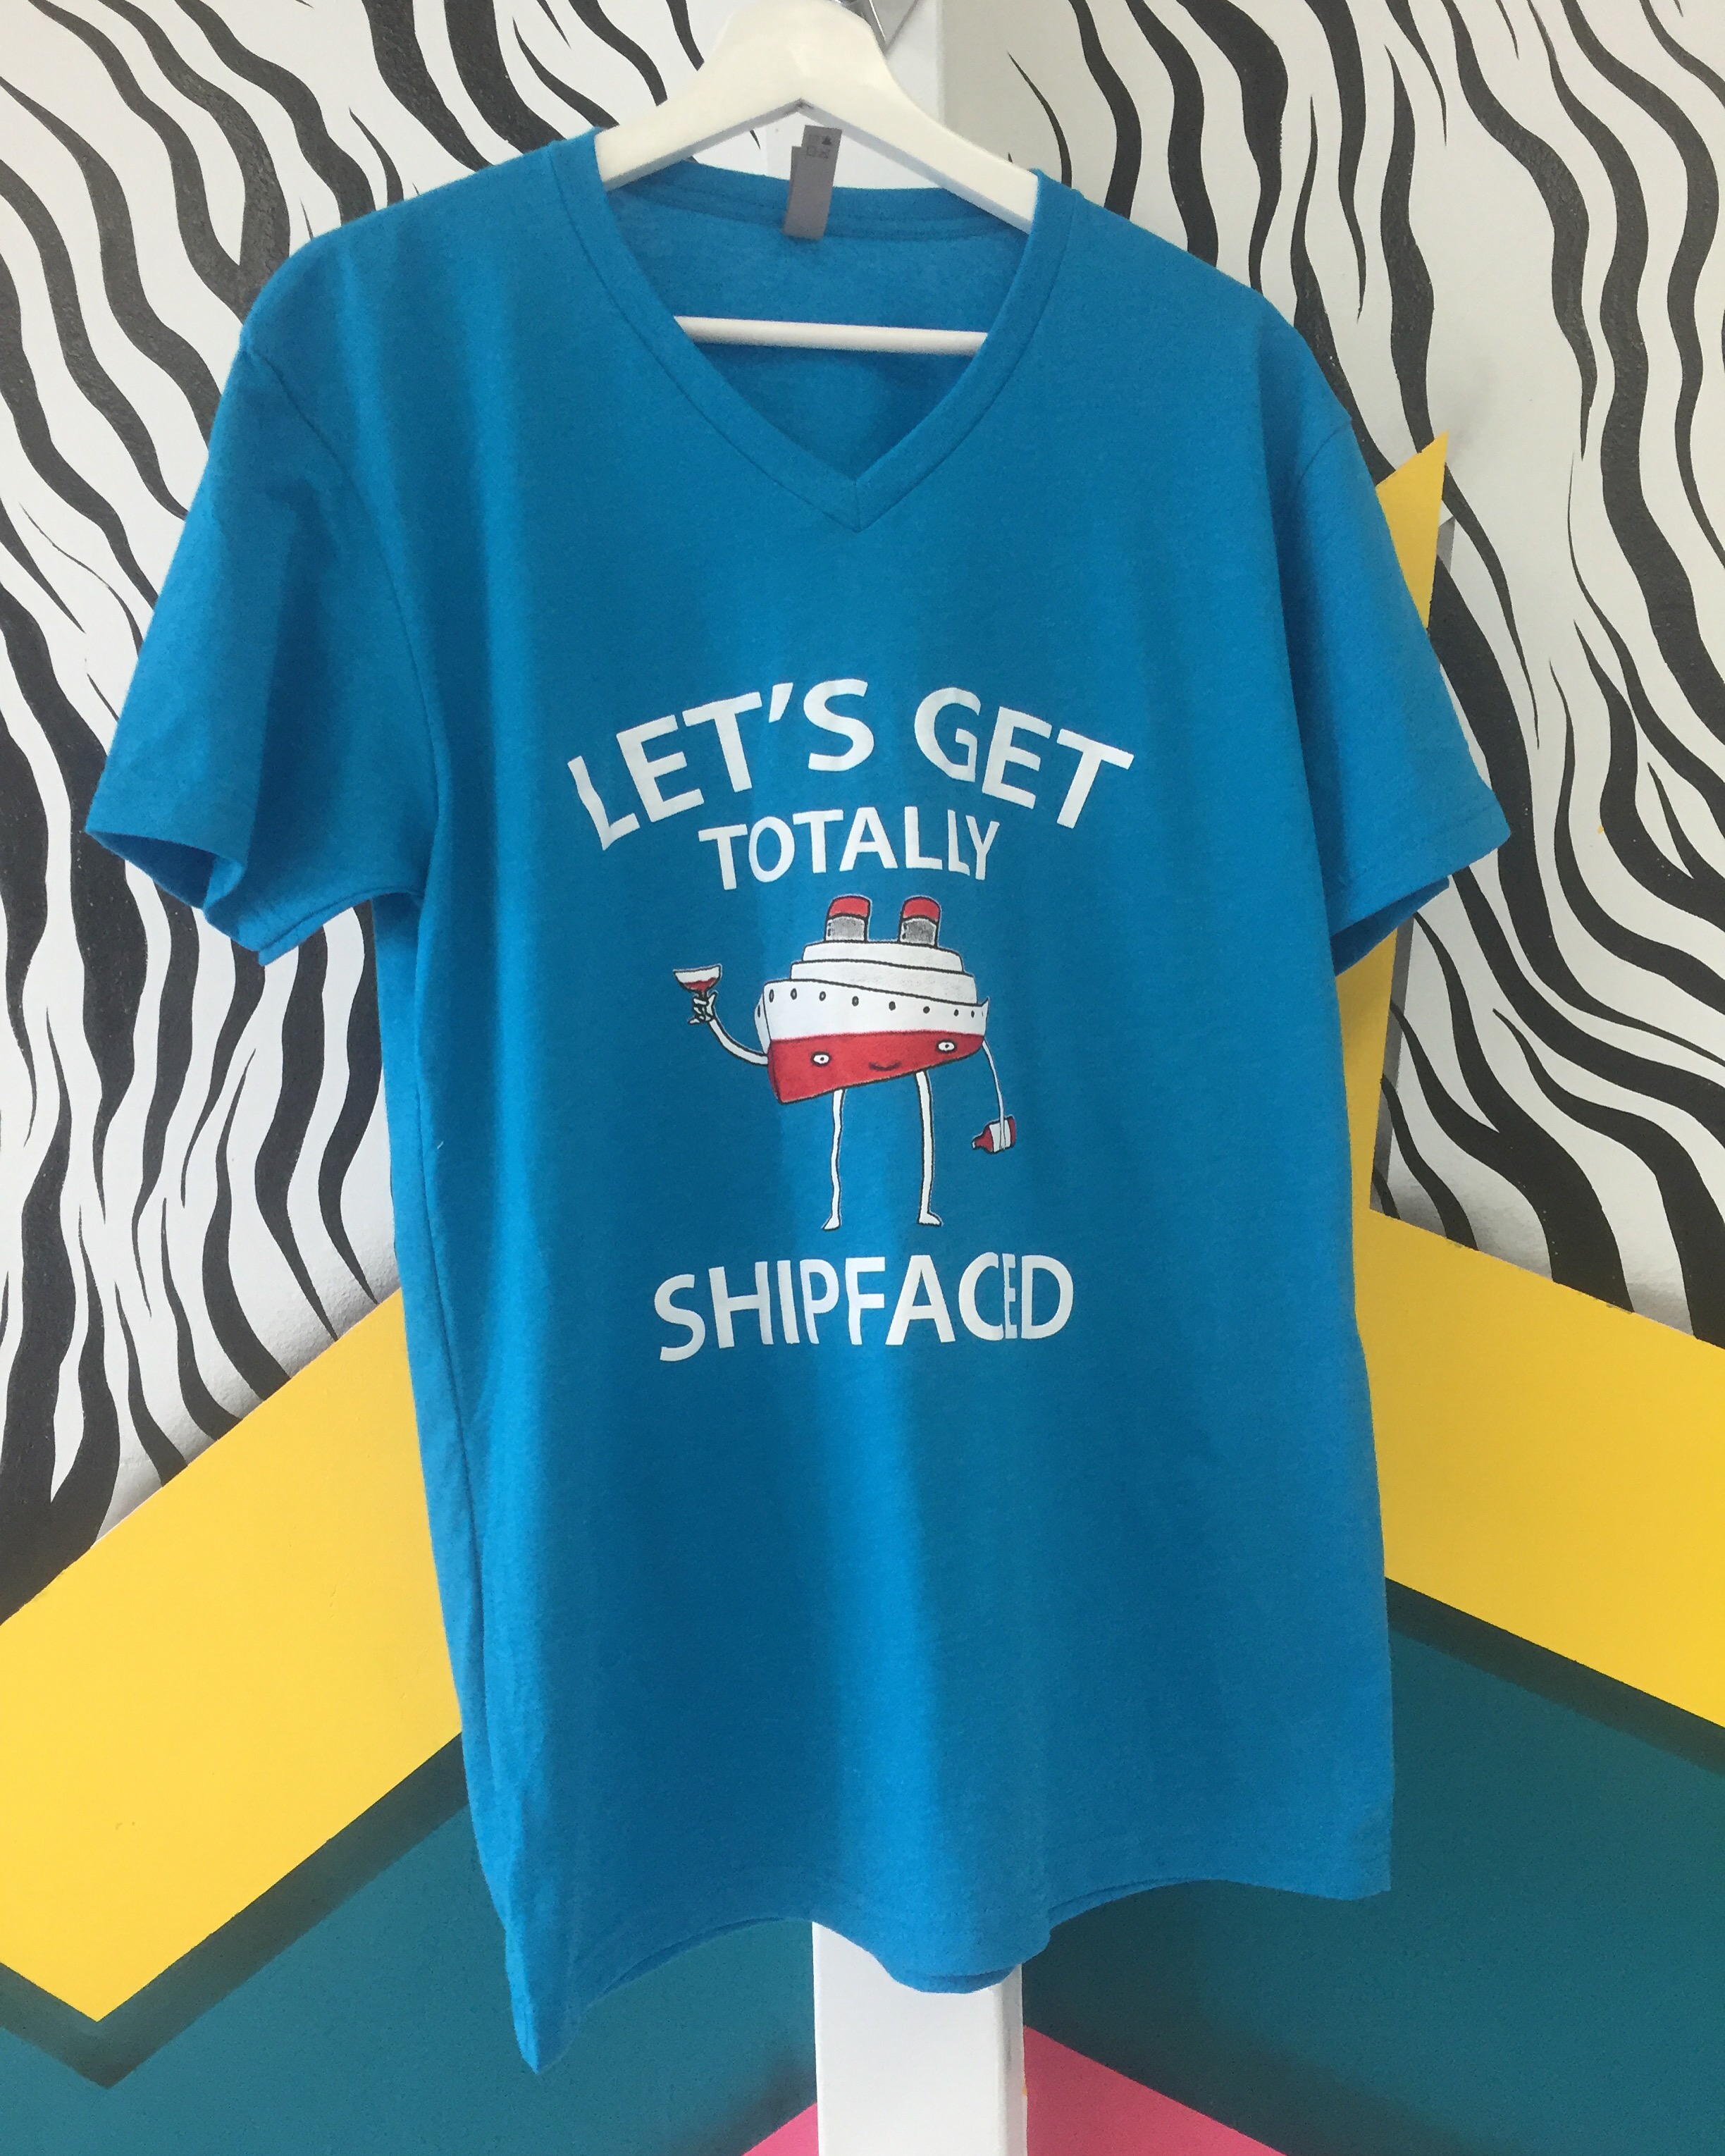 Cruise tshirts Stares Group TShirt Printing